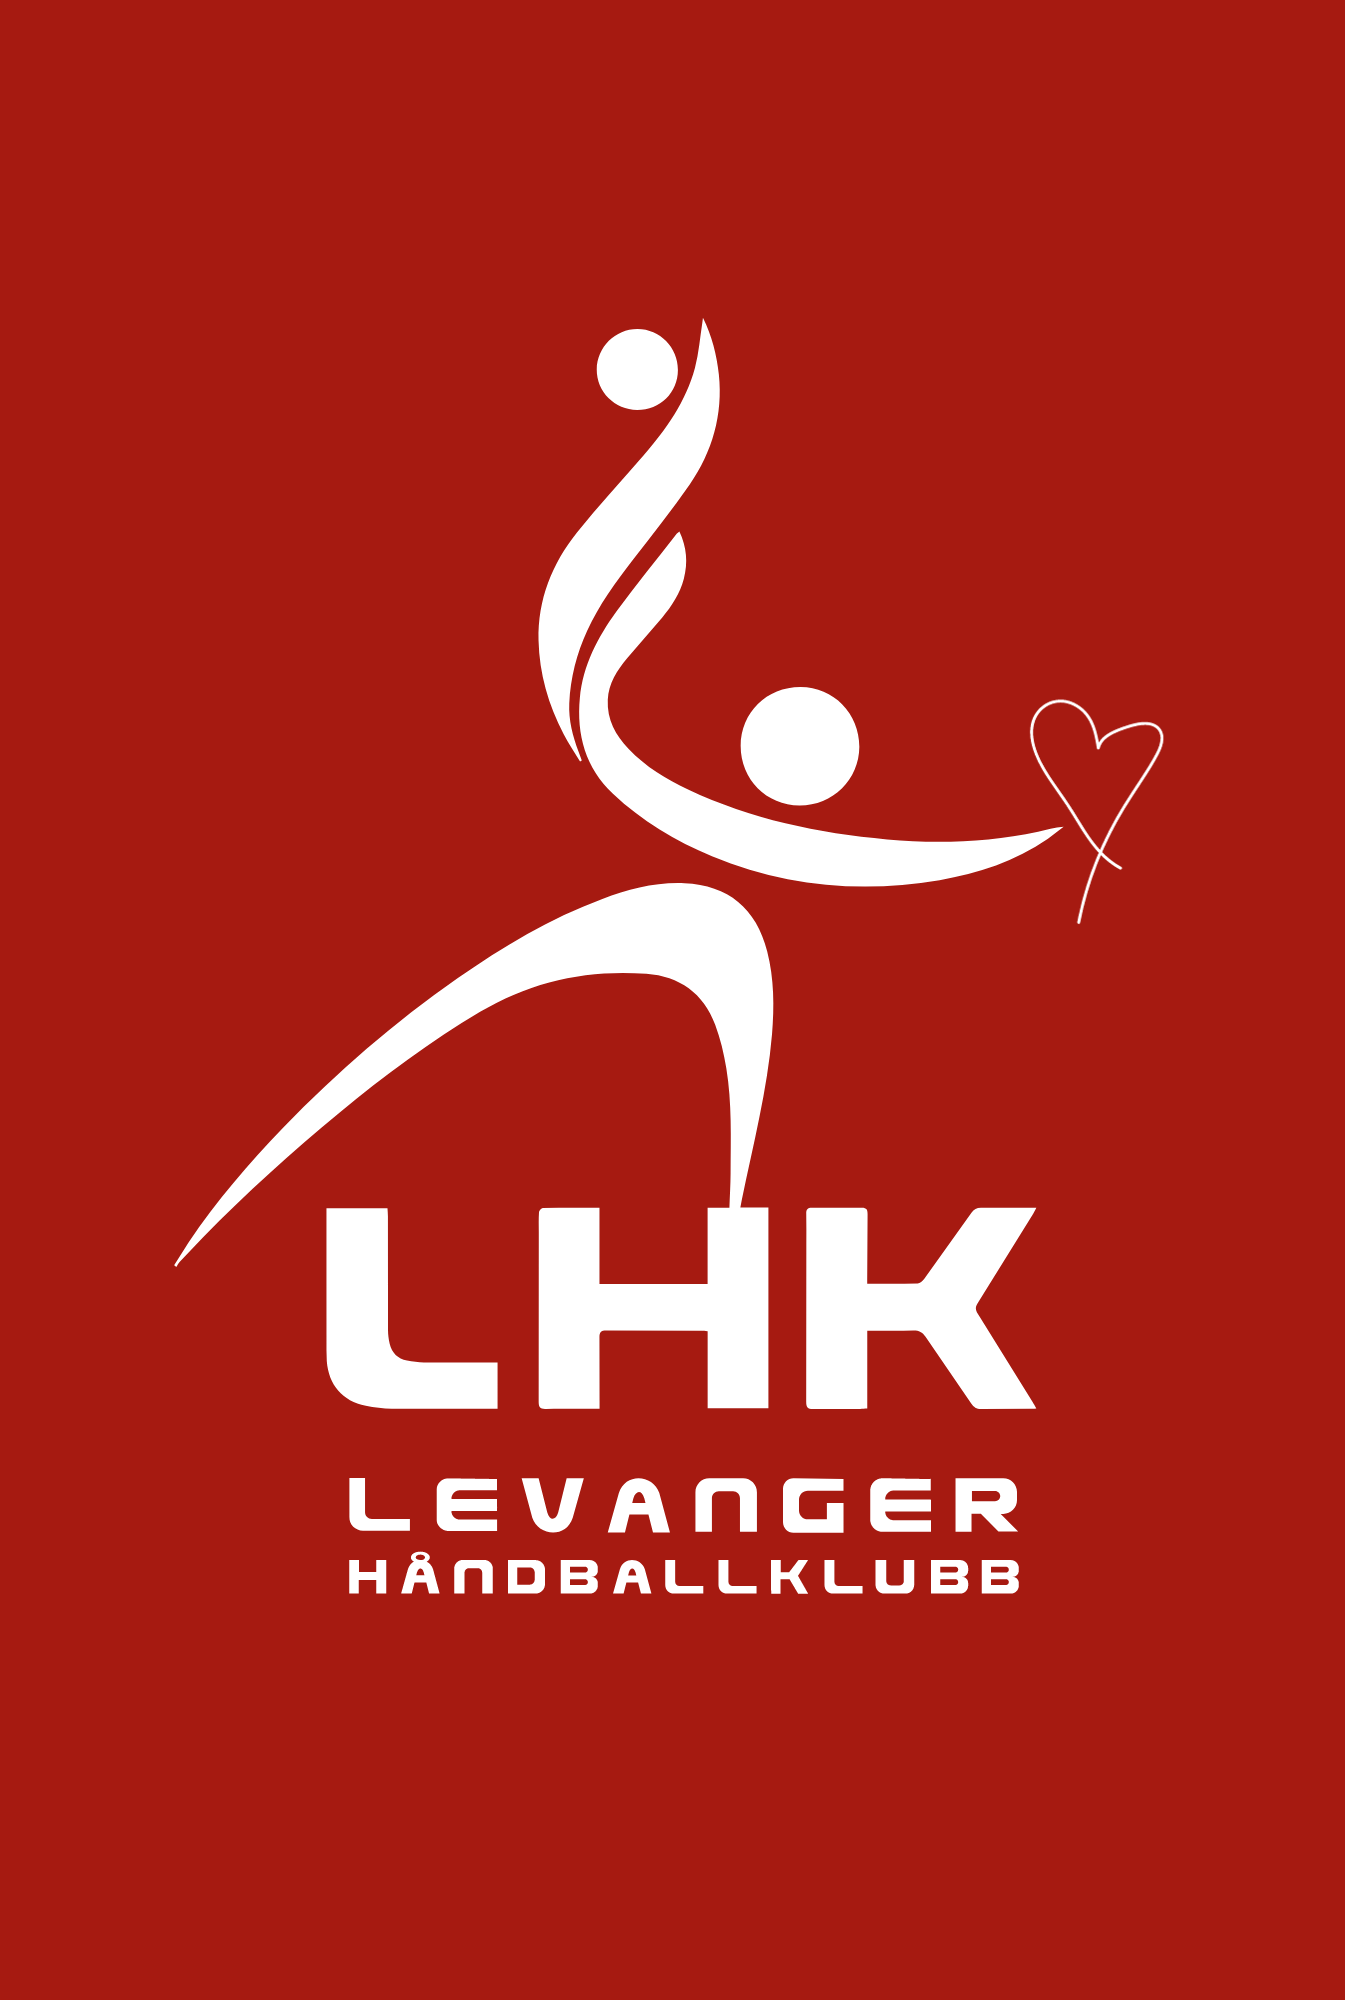 Takk logo LHK.png